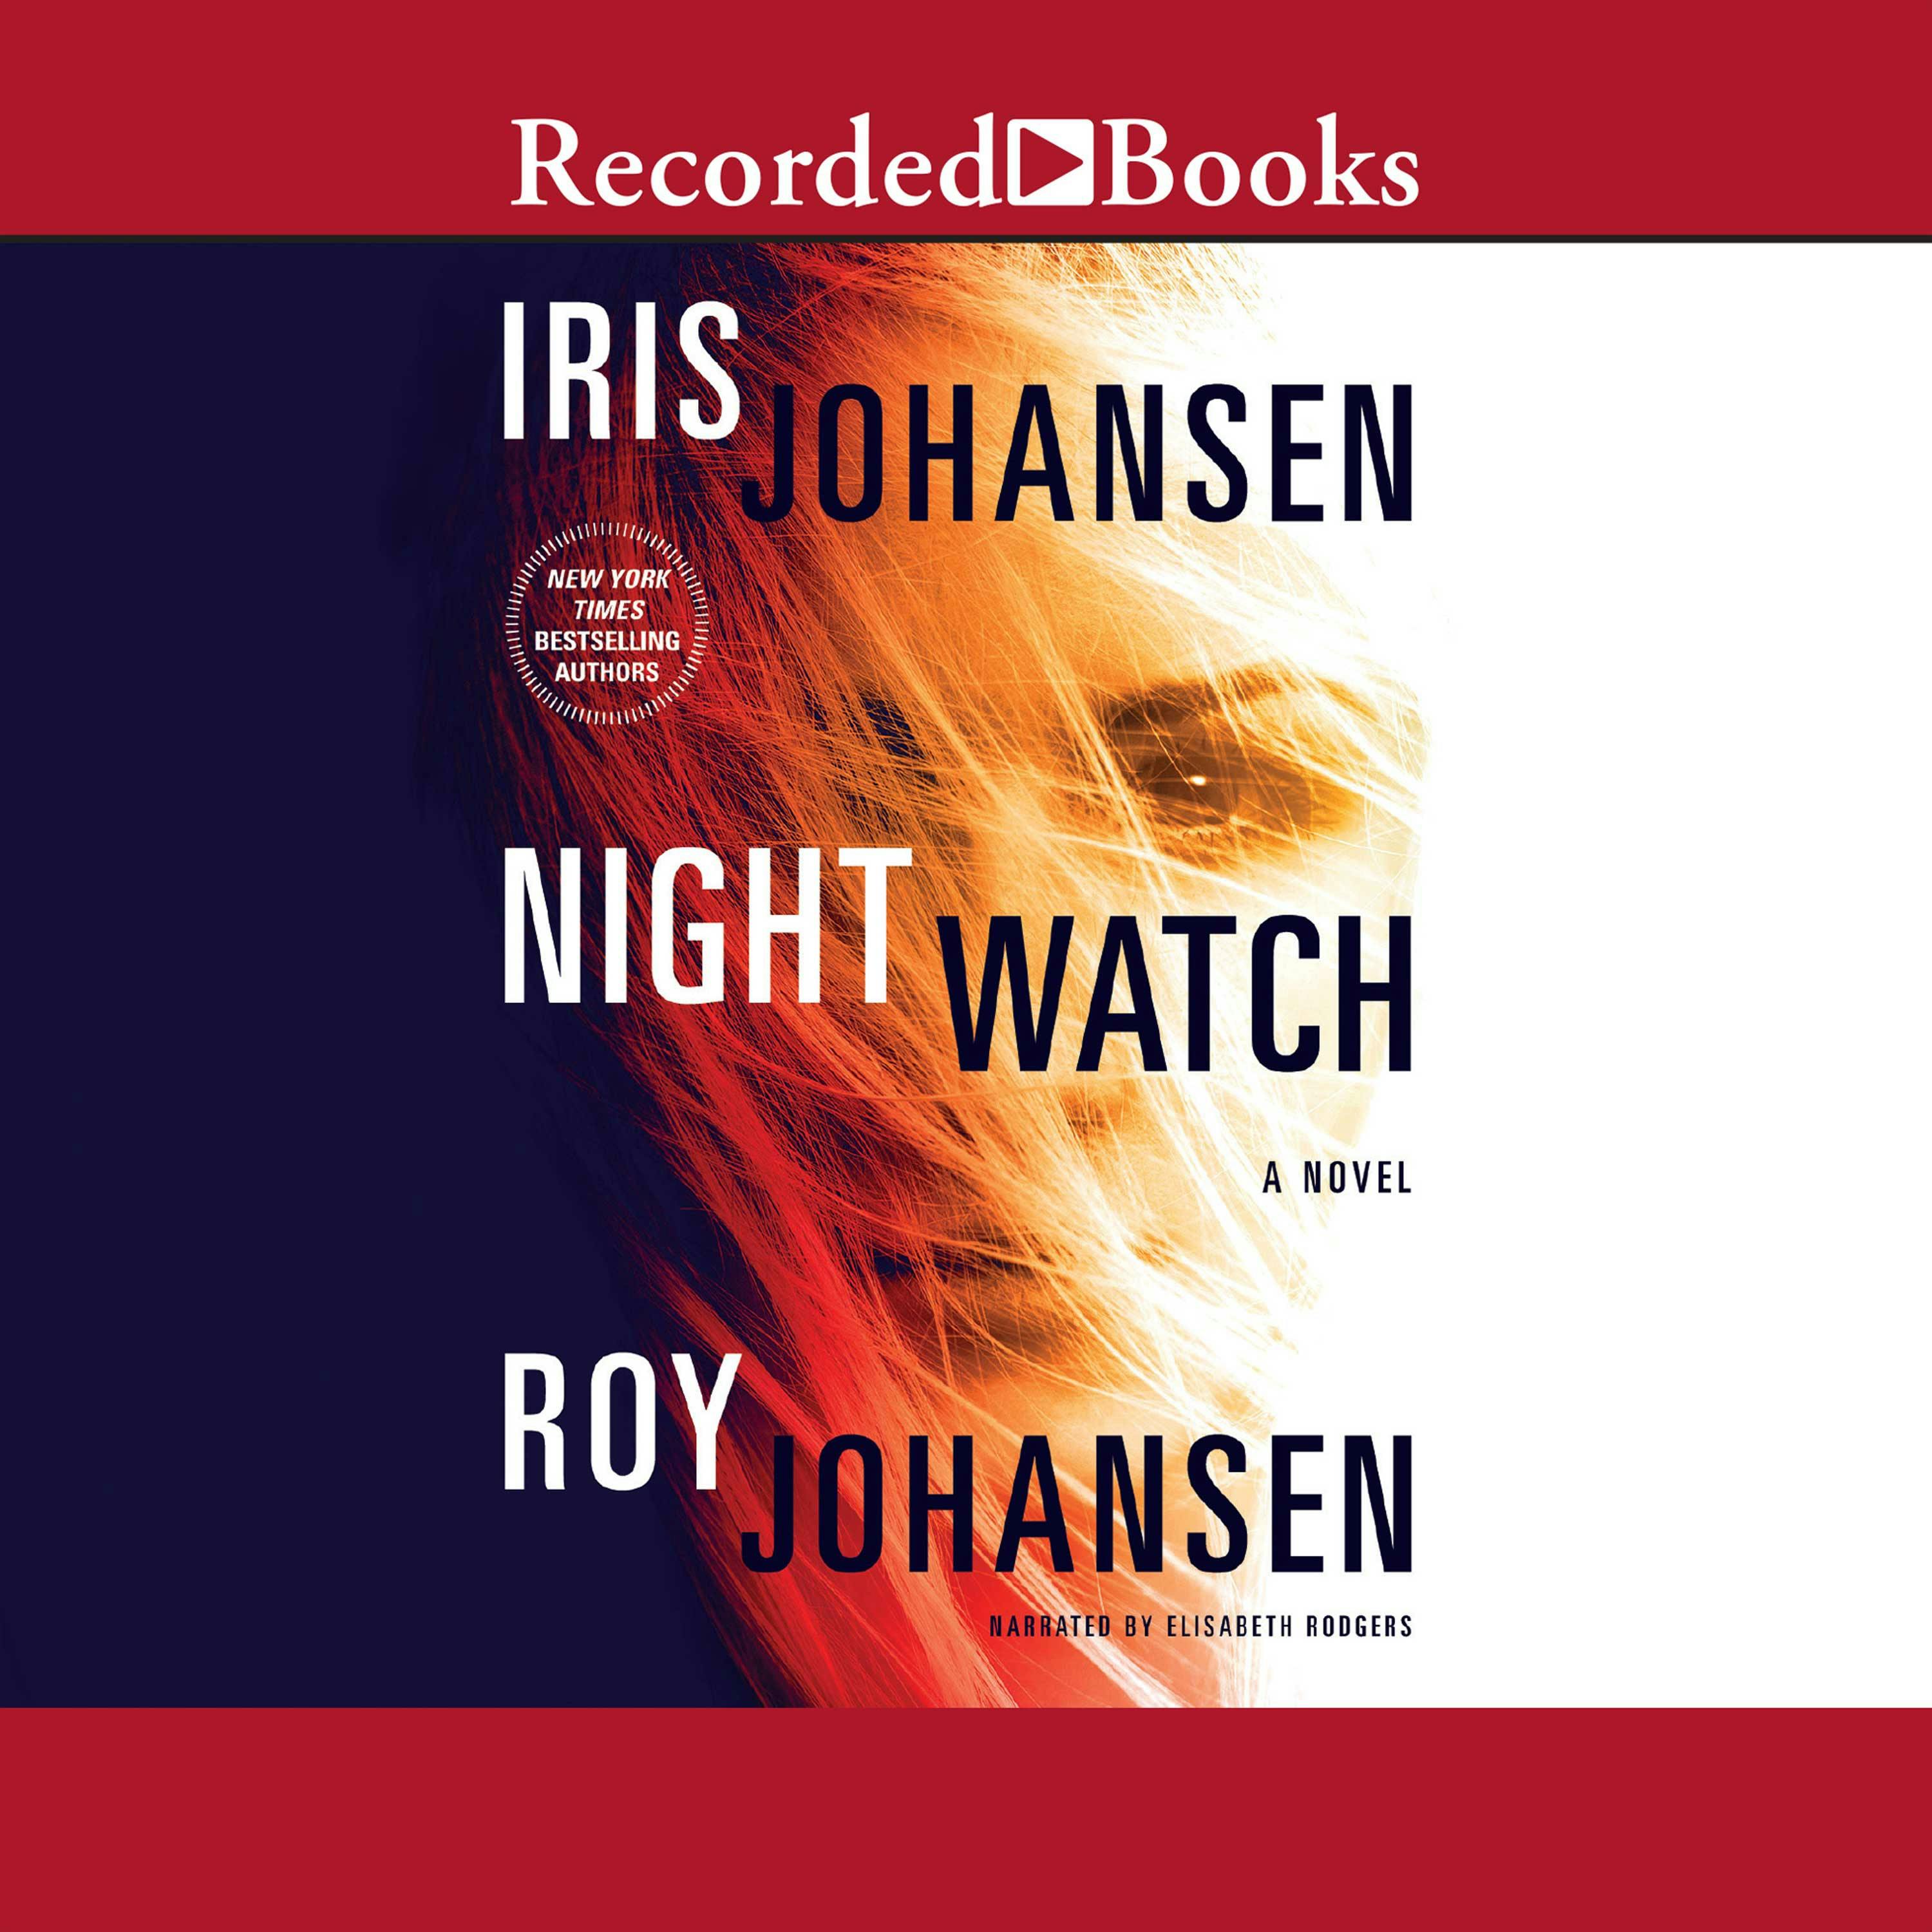 Night Watch - Roy Johansen, Iris Johansen